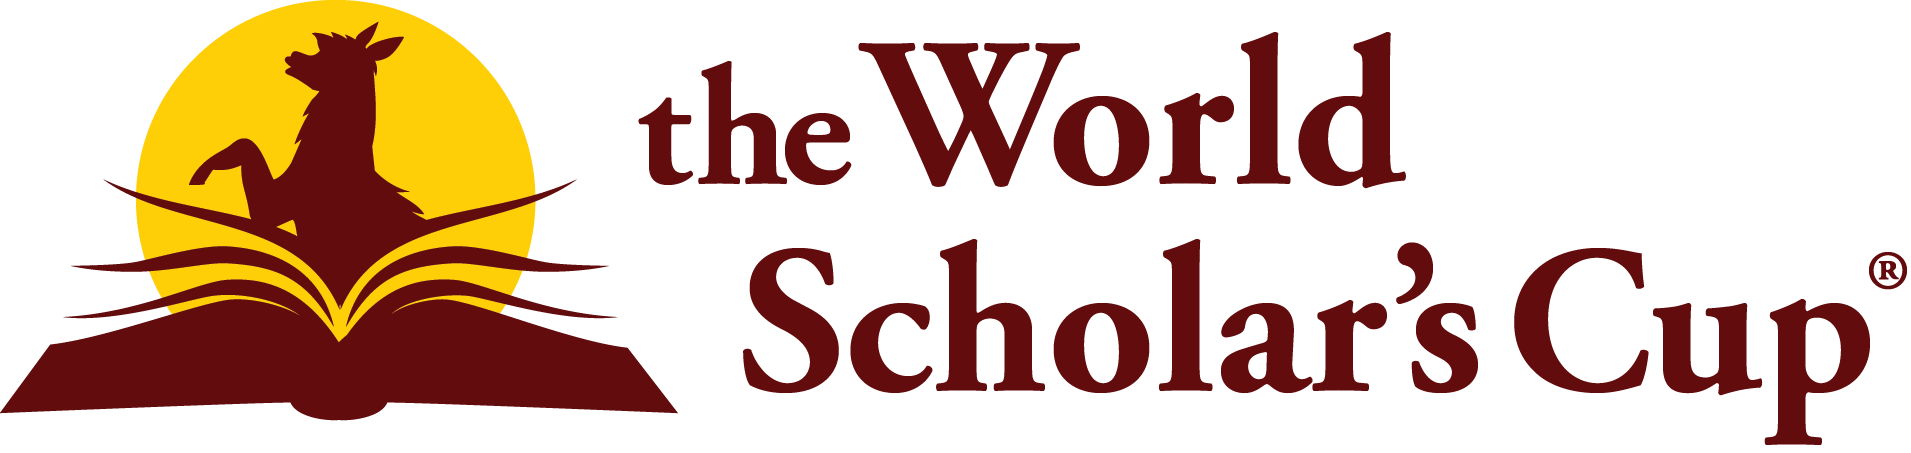 WSC logo.png